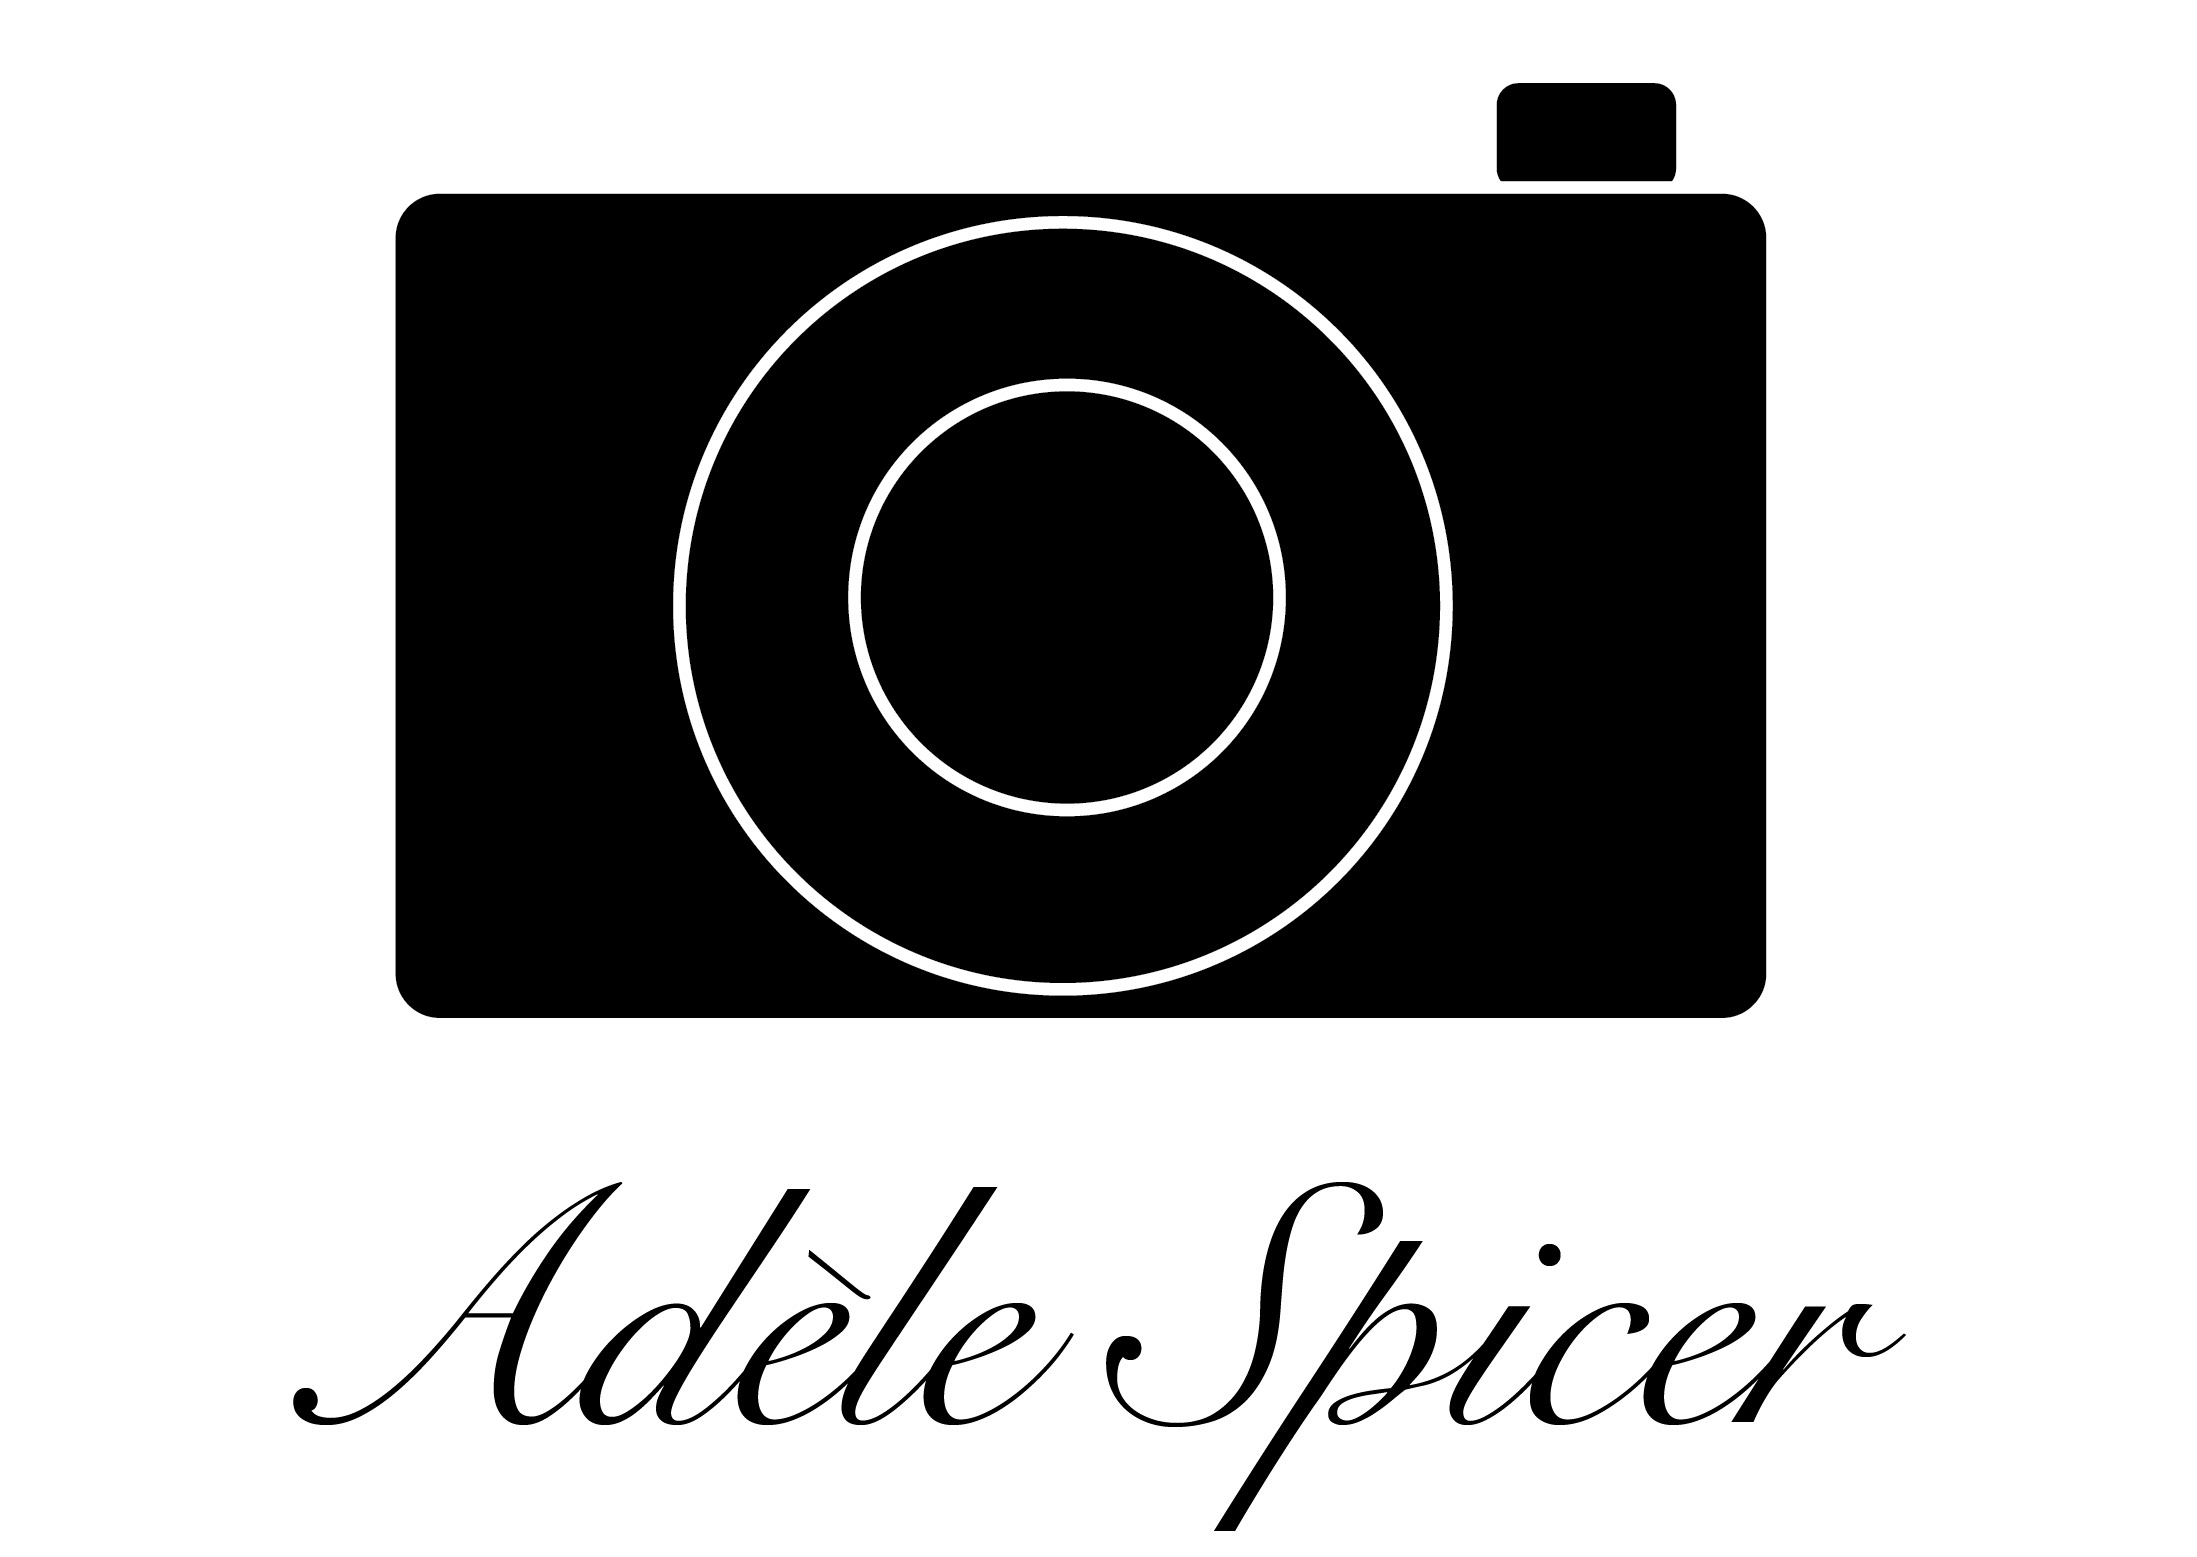 Adele Spicer